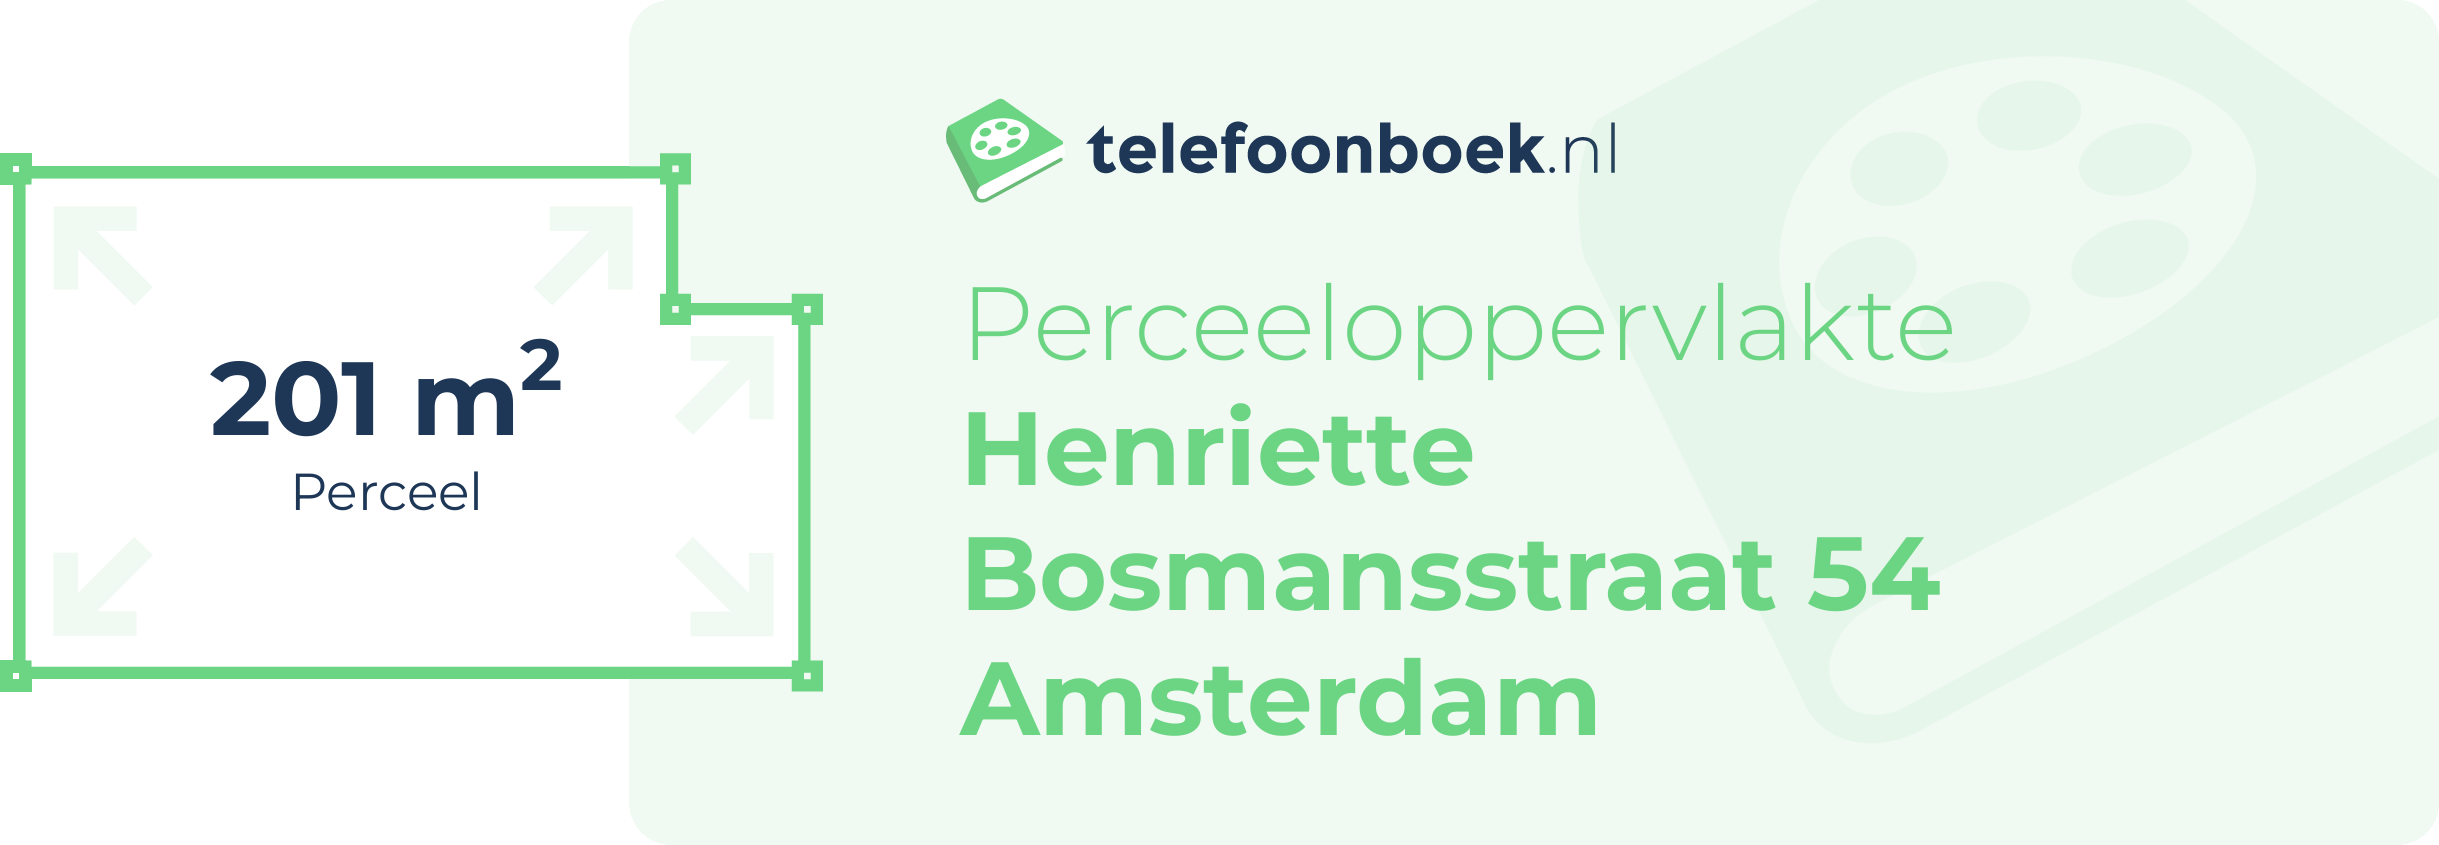 Perceeloppervlakte Henriette Bosmansstraat 54 Amsterdam